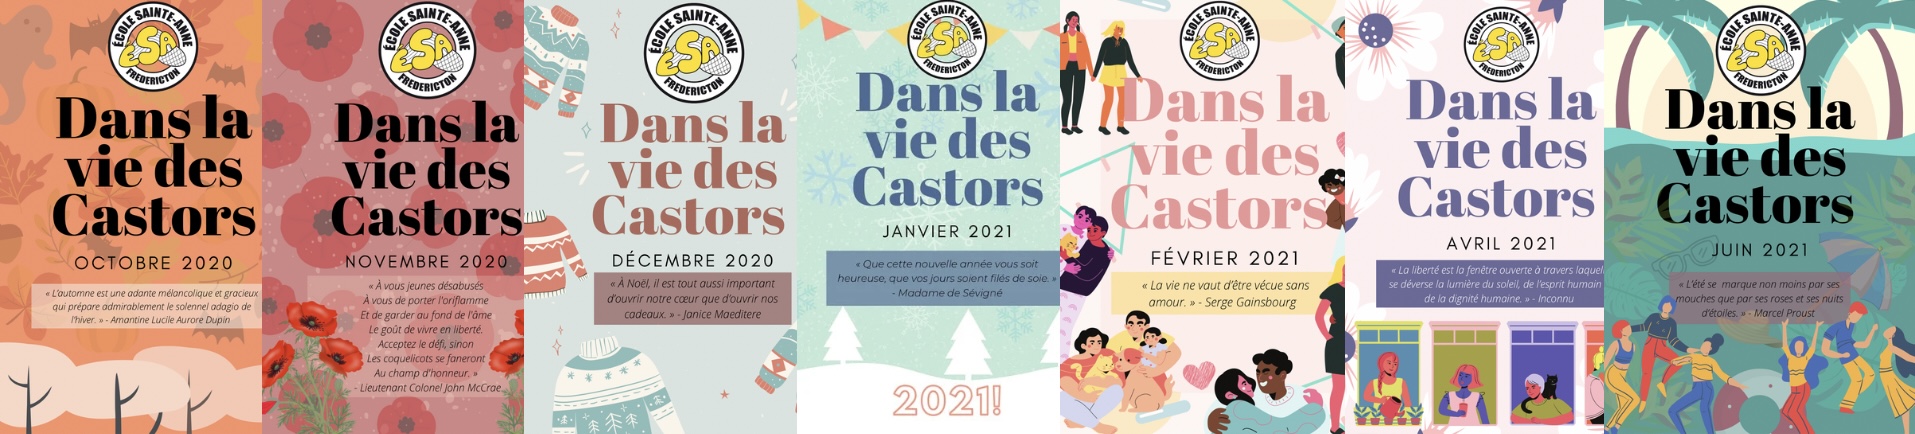 Dans la vie des Castors Journal Issues 2020-2021